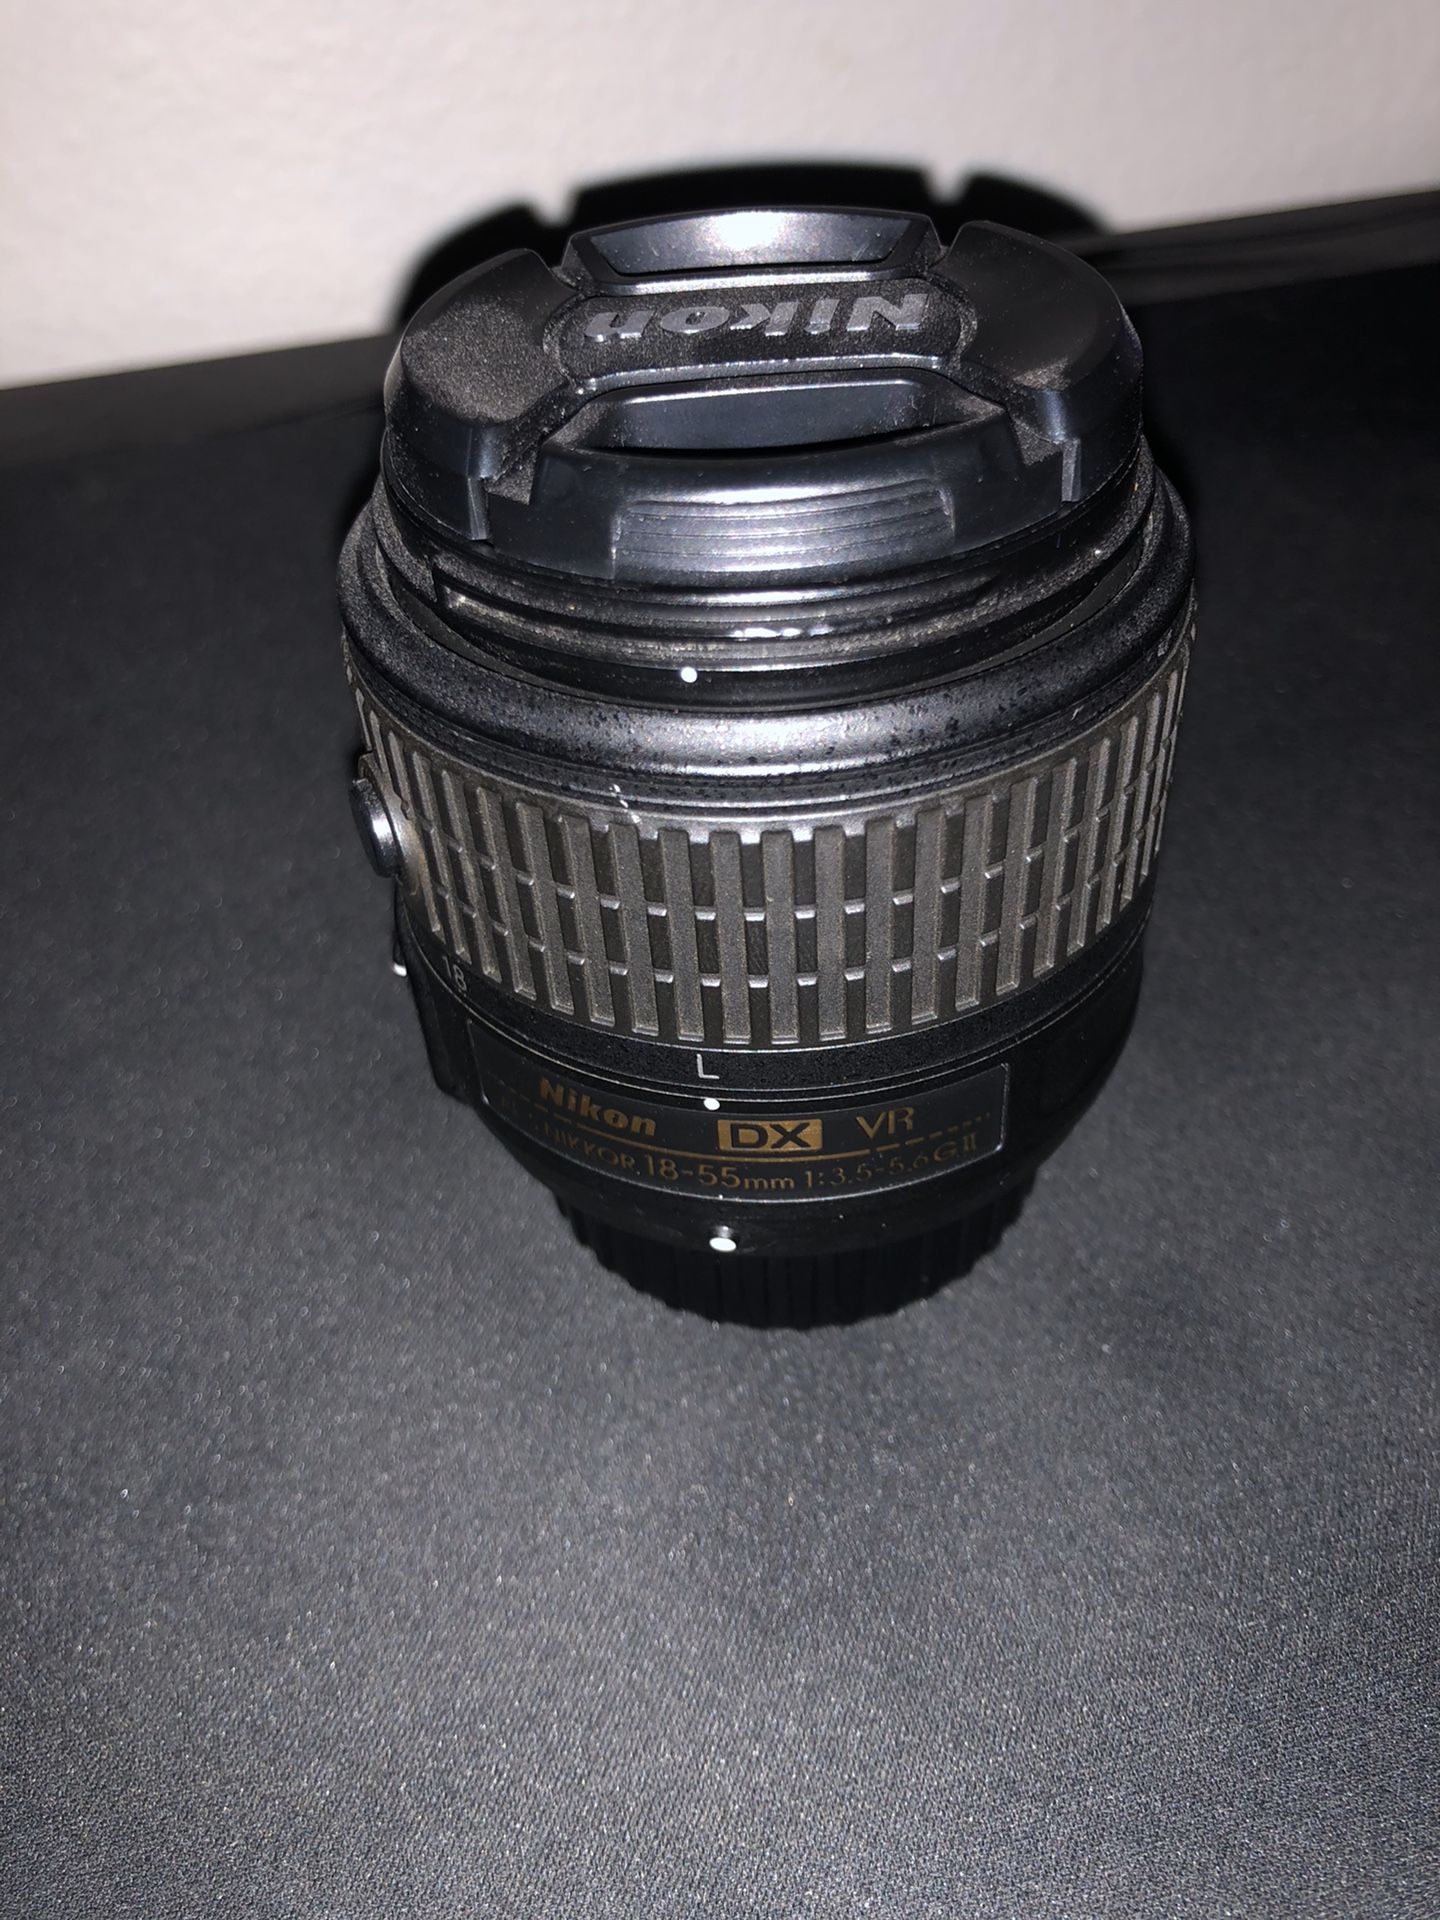 Nikon 18-55mm starter kit lens